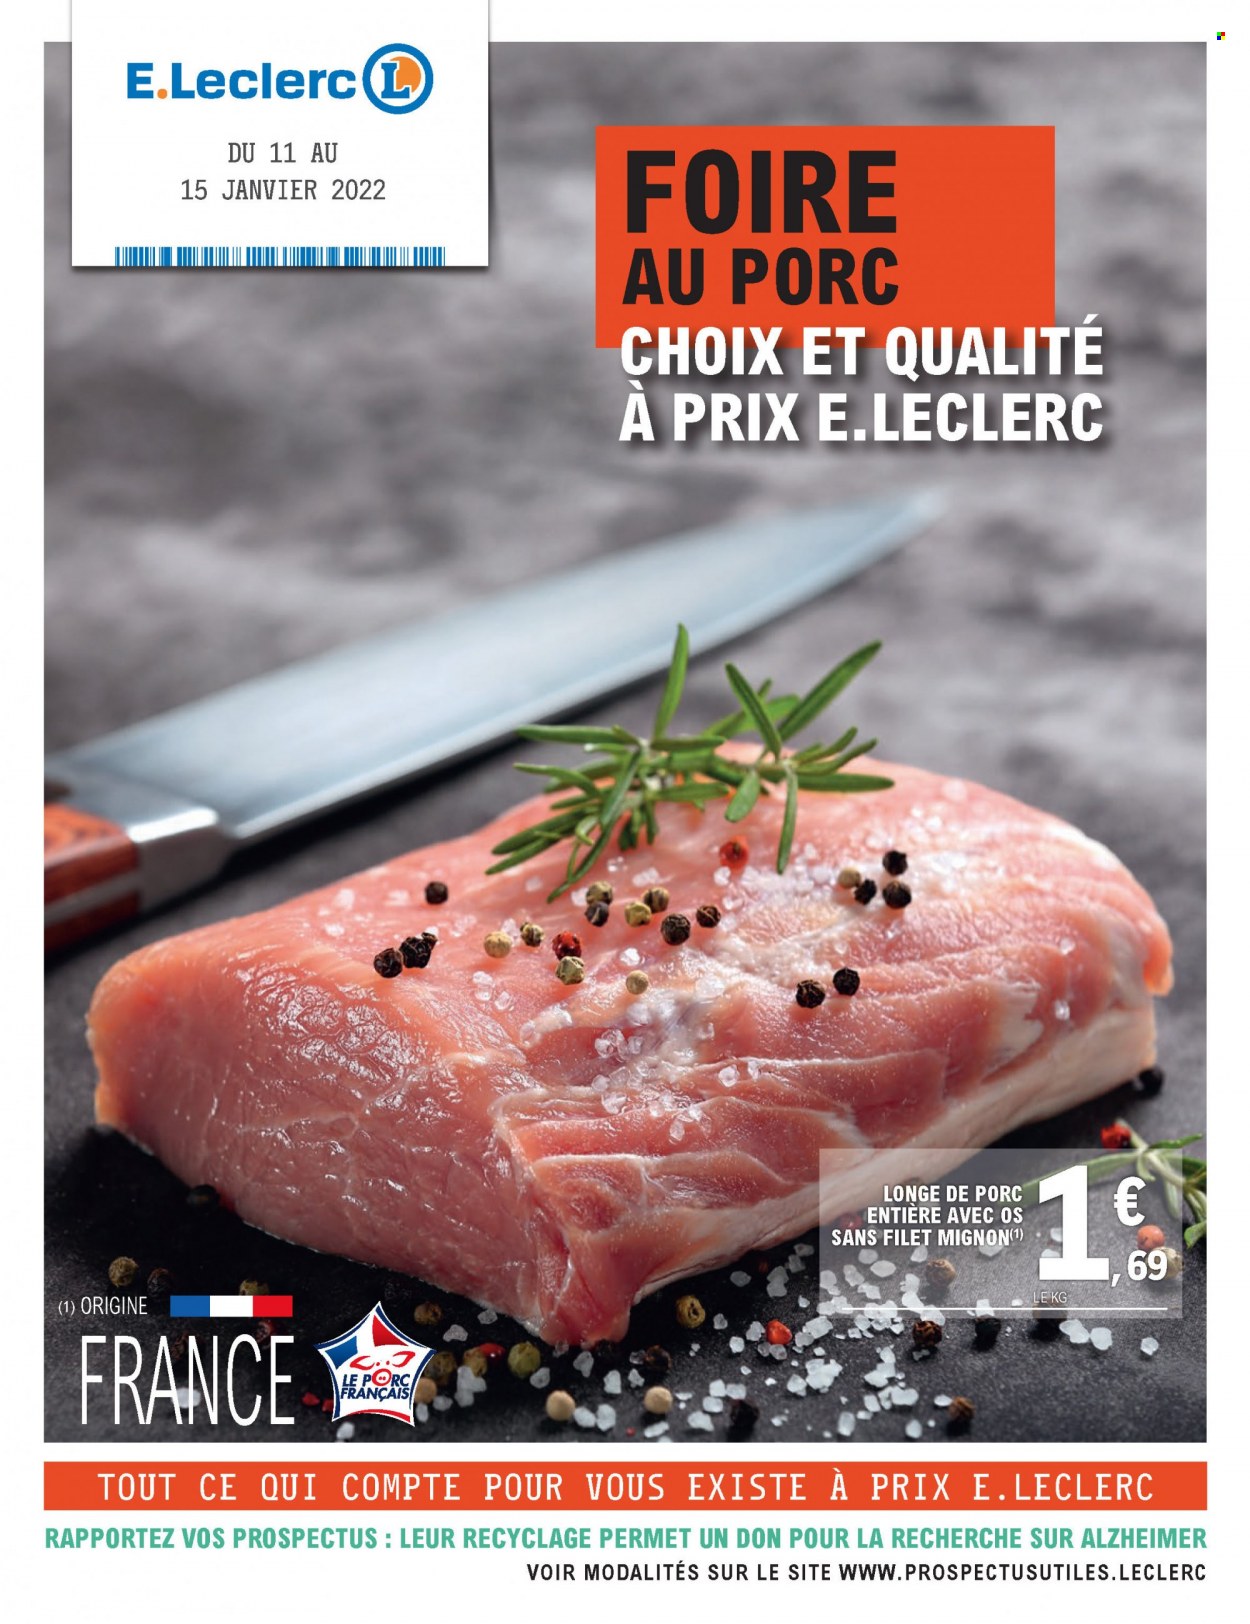 thumbnail - Catalogue E.Leclerc - 11/01/2022 - 15/01/2022 - Produits soldés - filet mignon, longe de porc. Page 1.